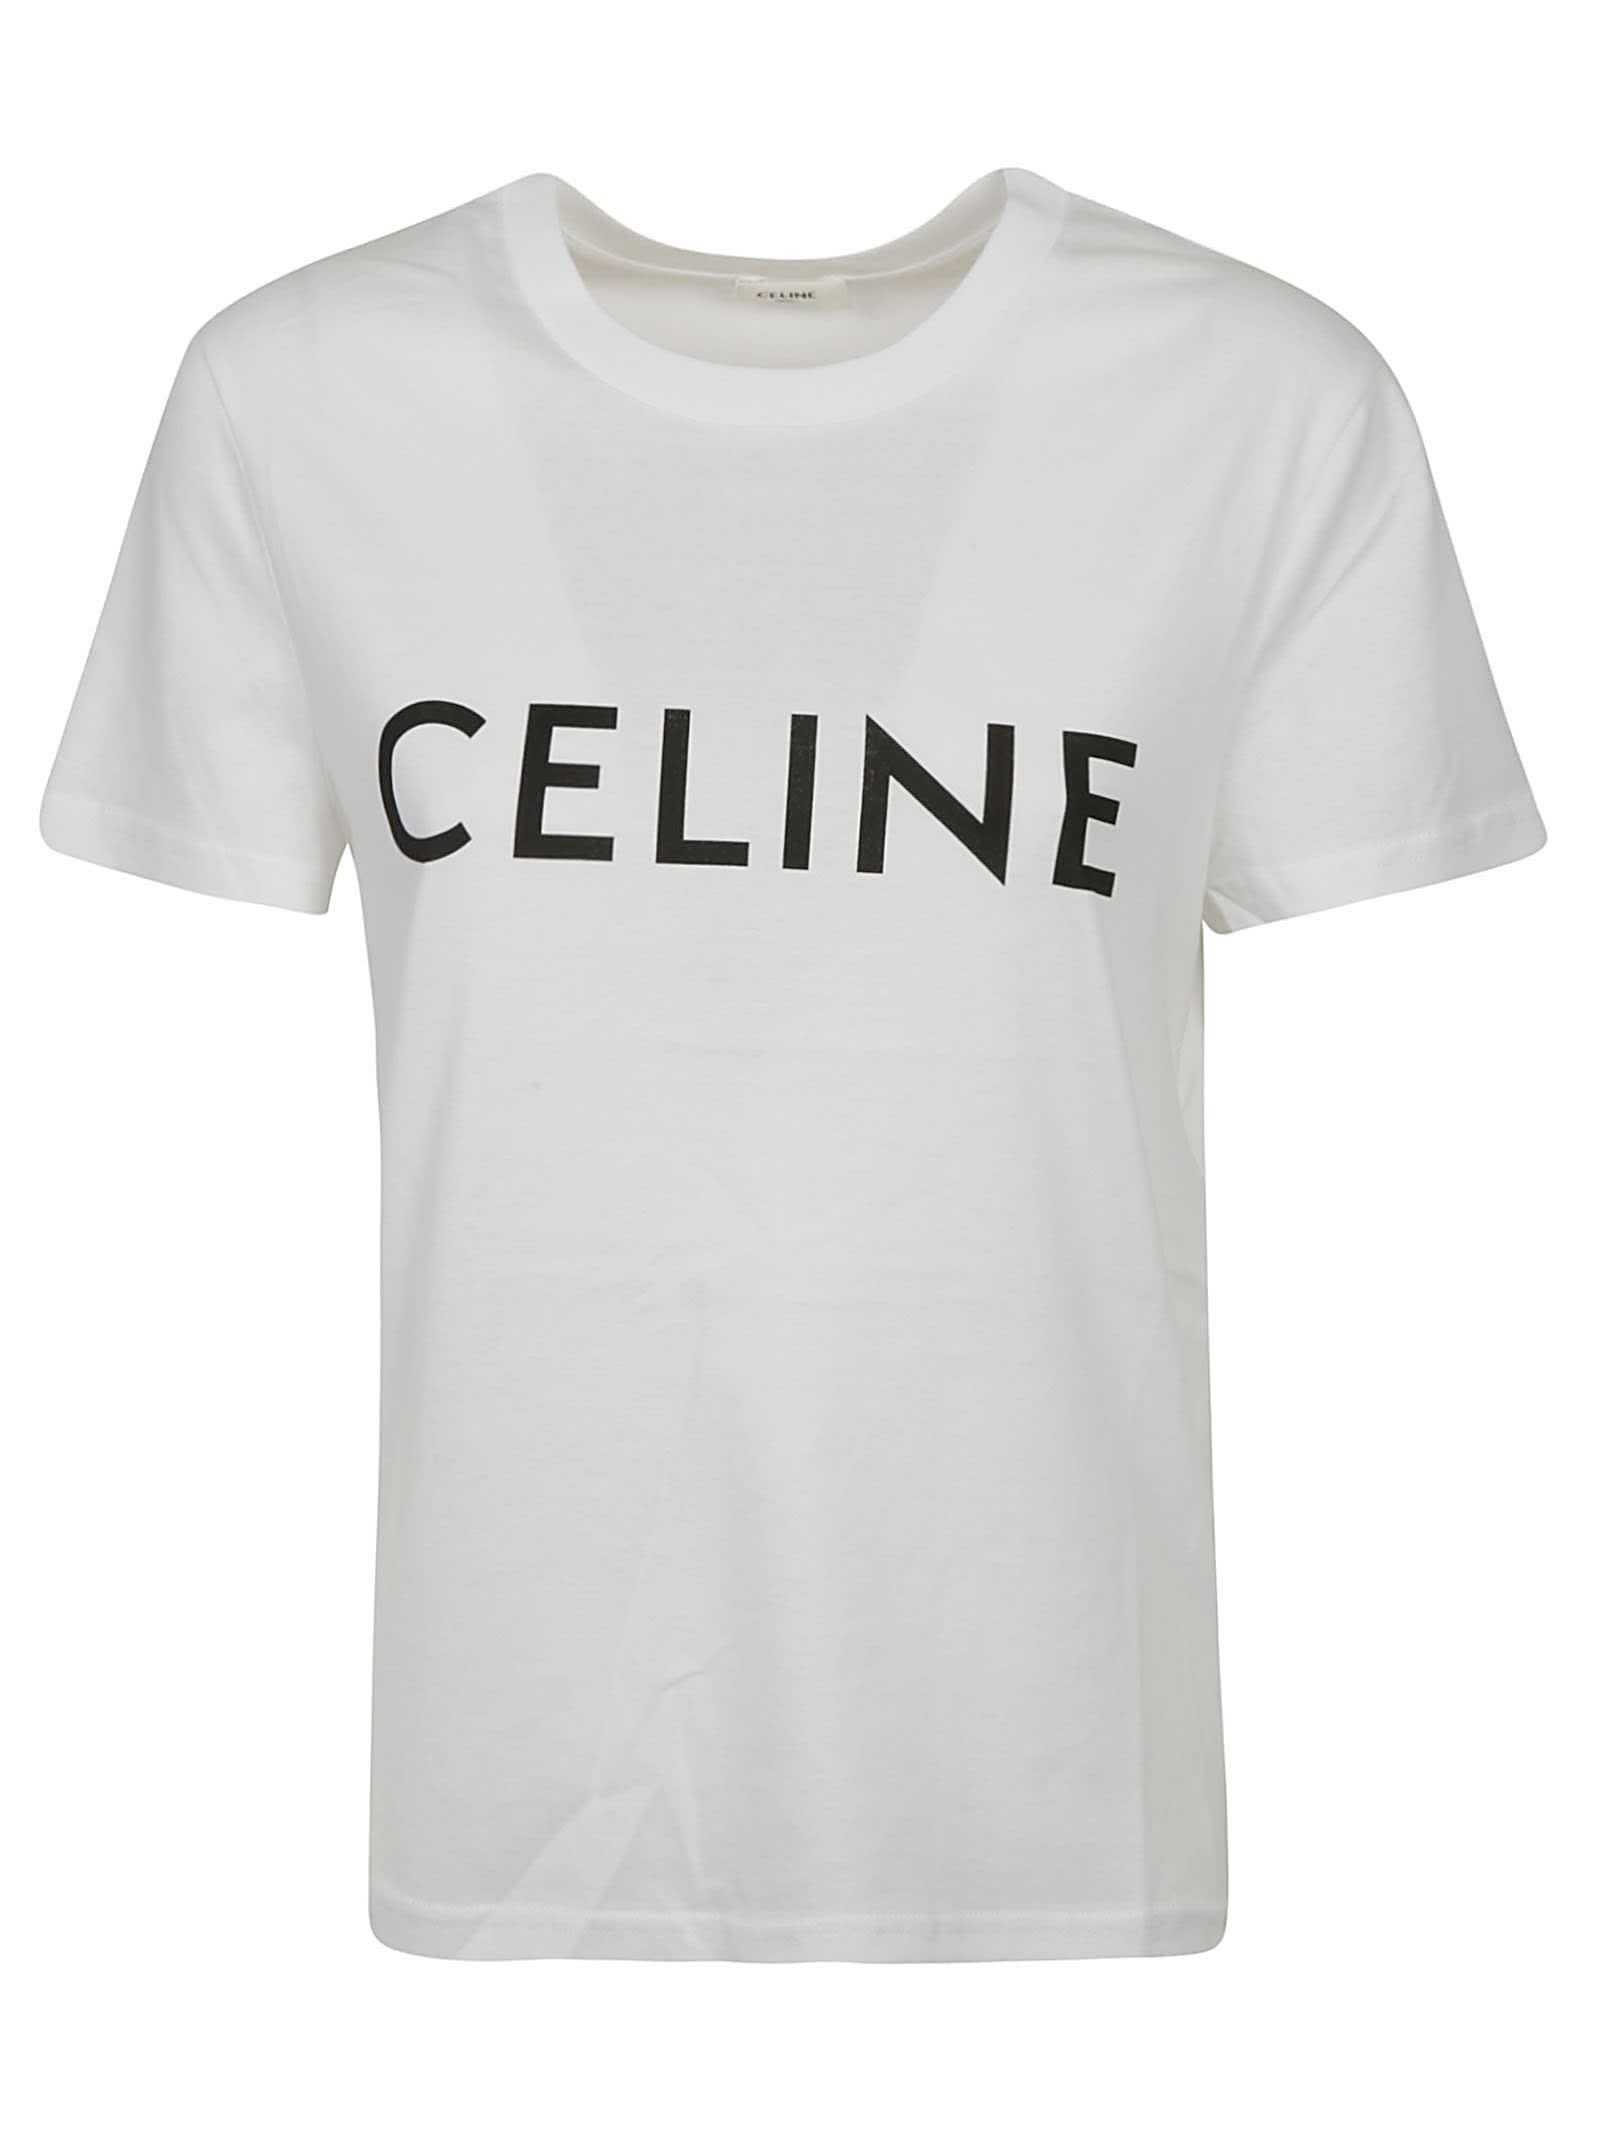 Celine Logo T-shirt In Off White/black | ModeSens